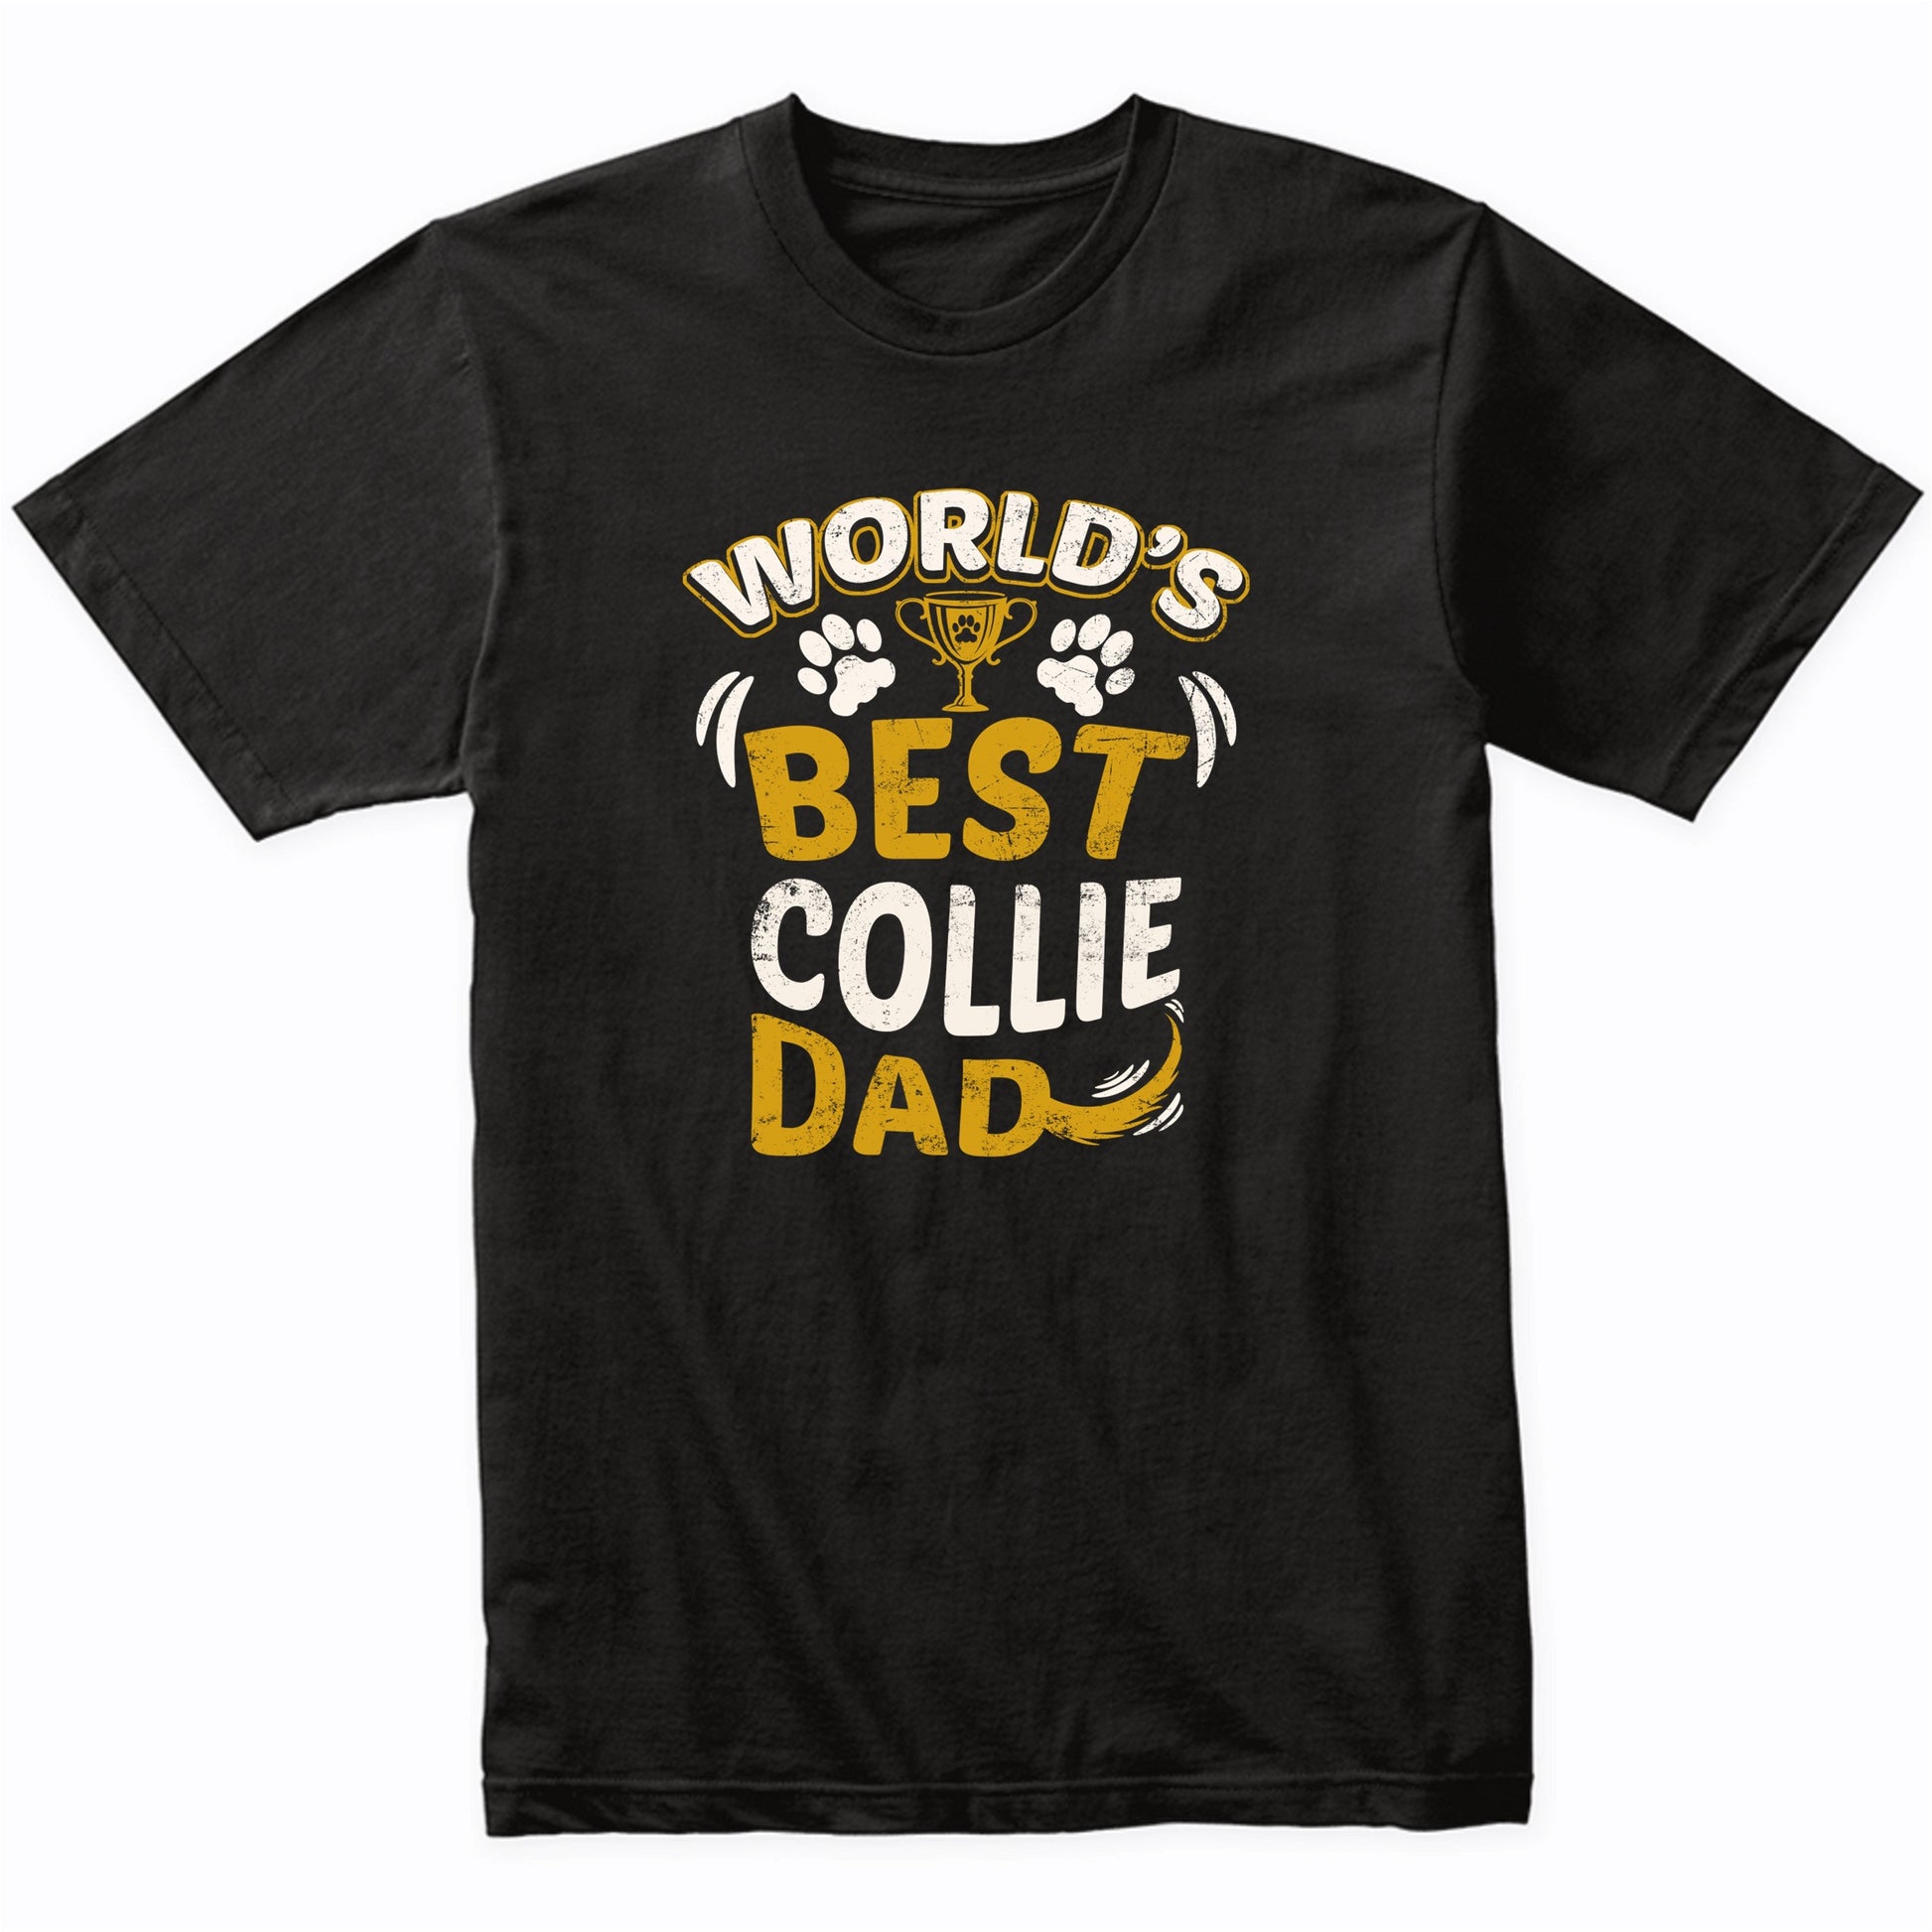 World's Best Collie Dad Graphic T-Shirt